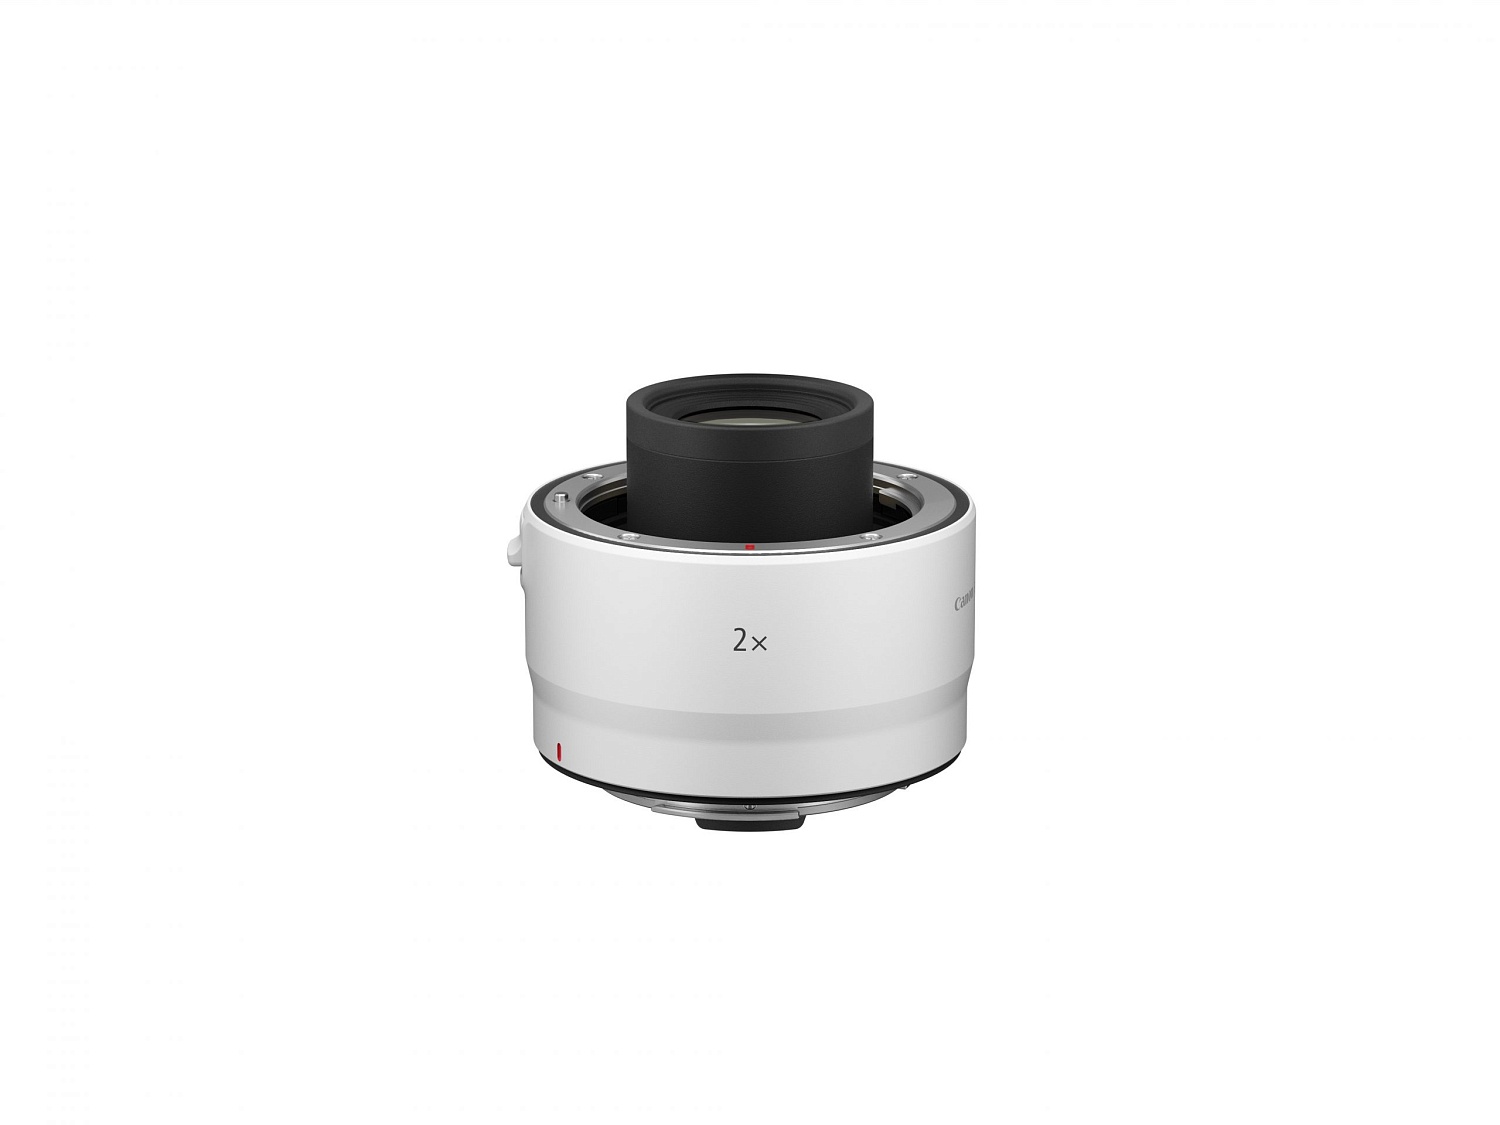 Canon анонсирует разработку революционной камеры EOS R5 с поддержкой видеозаписи 8K